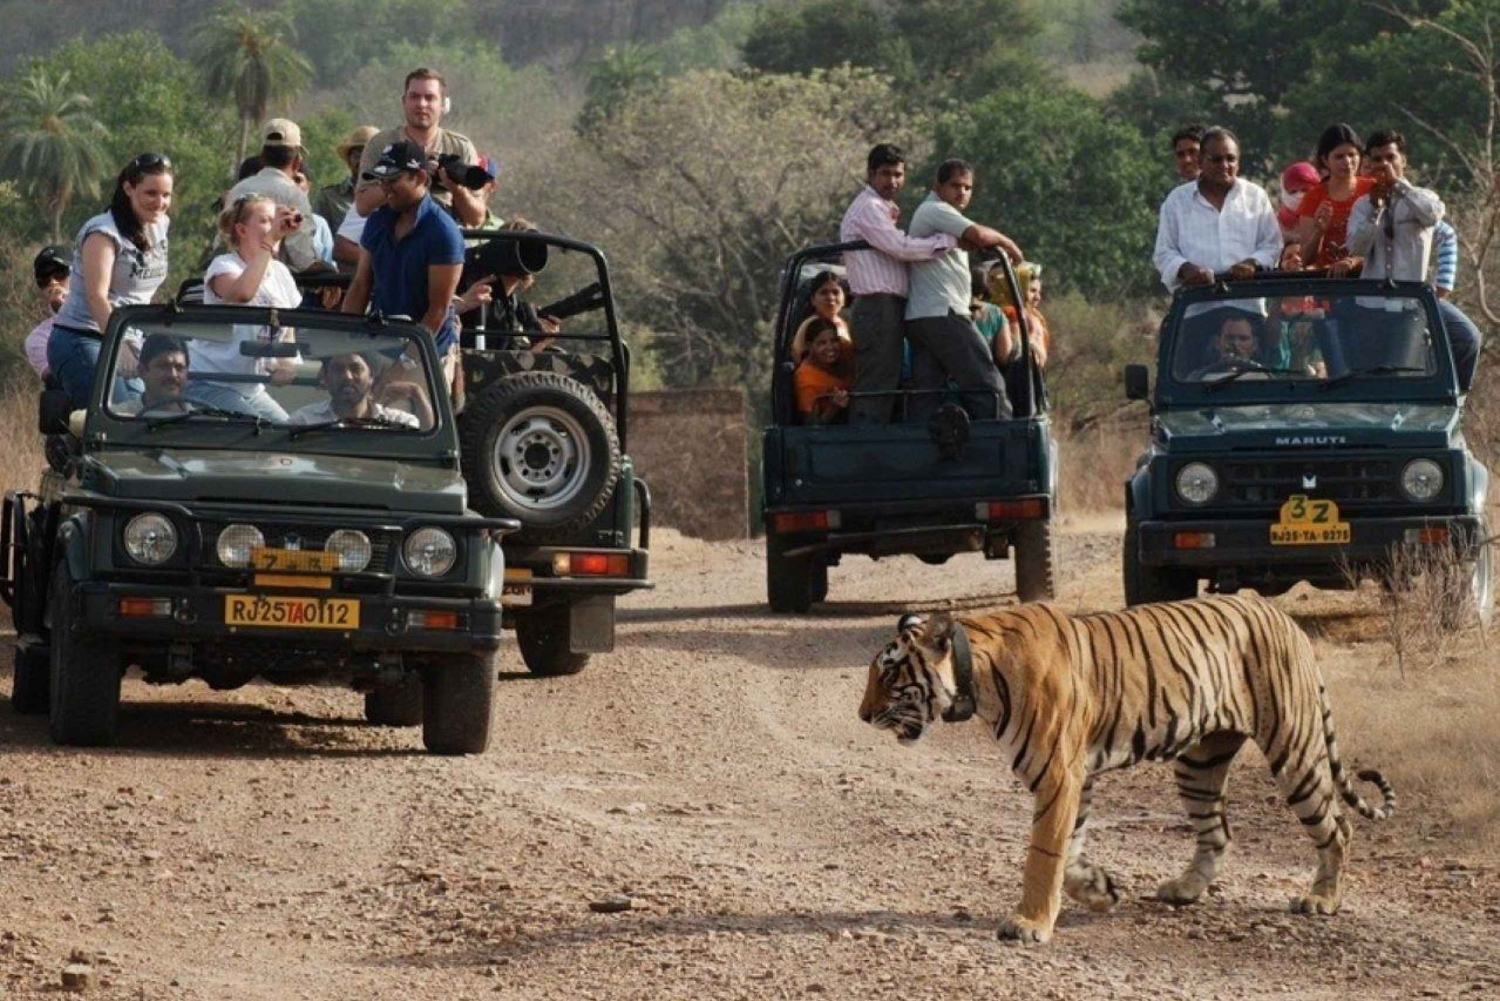 Bestilling av safari i Ranthambhore